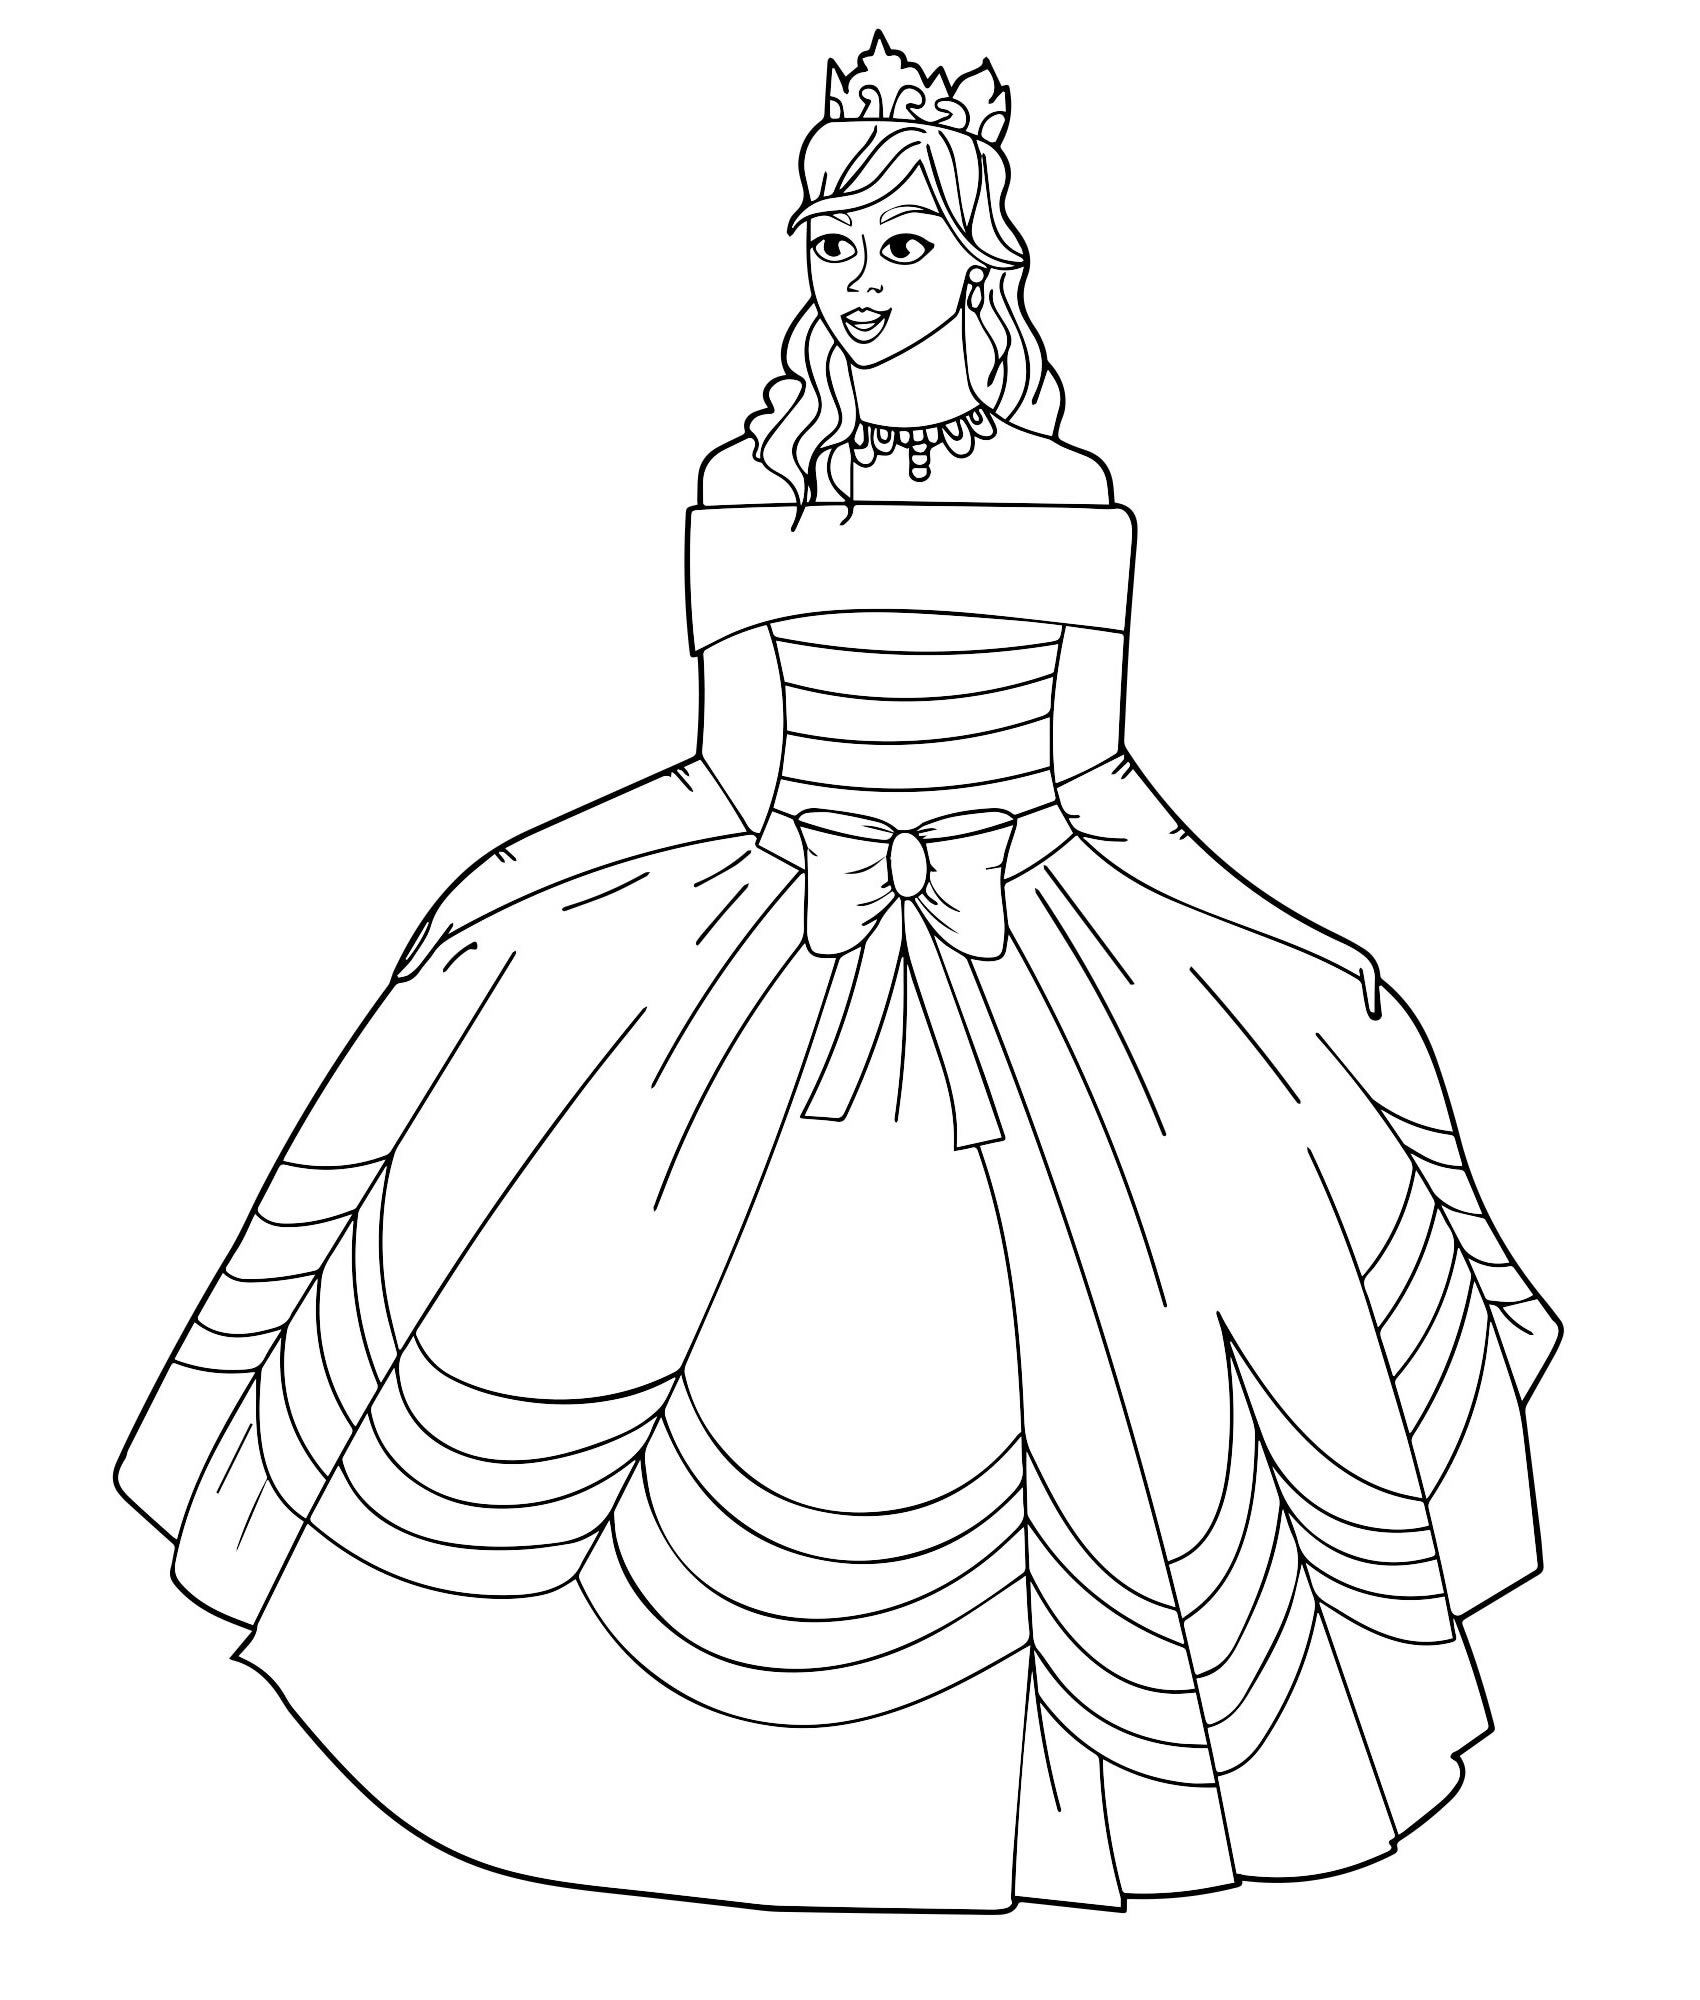 Royal coloring for girls princesses in beautiful dresses